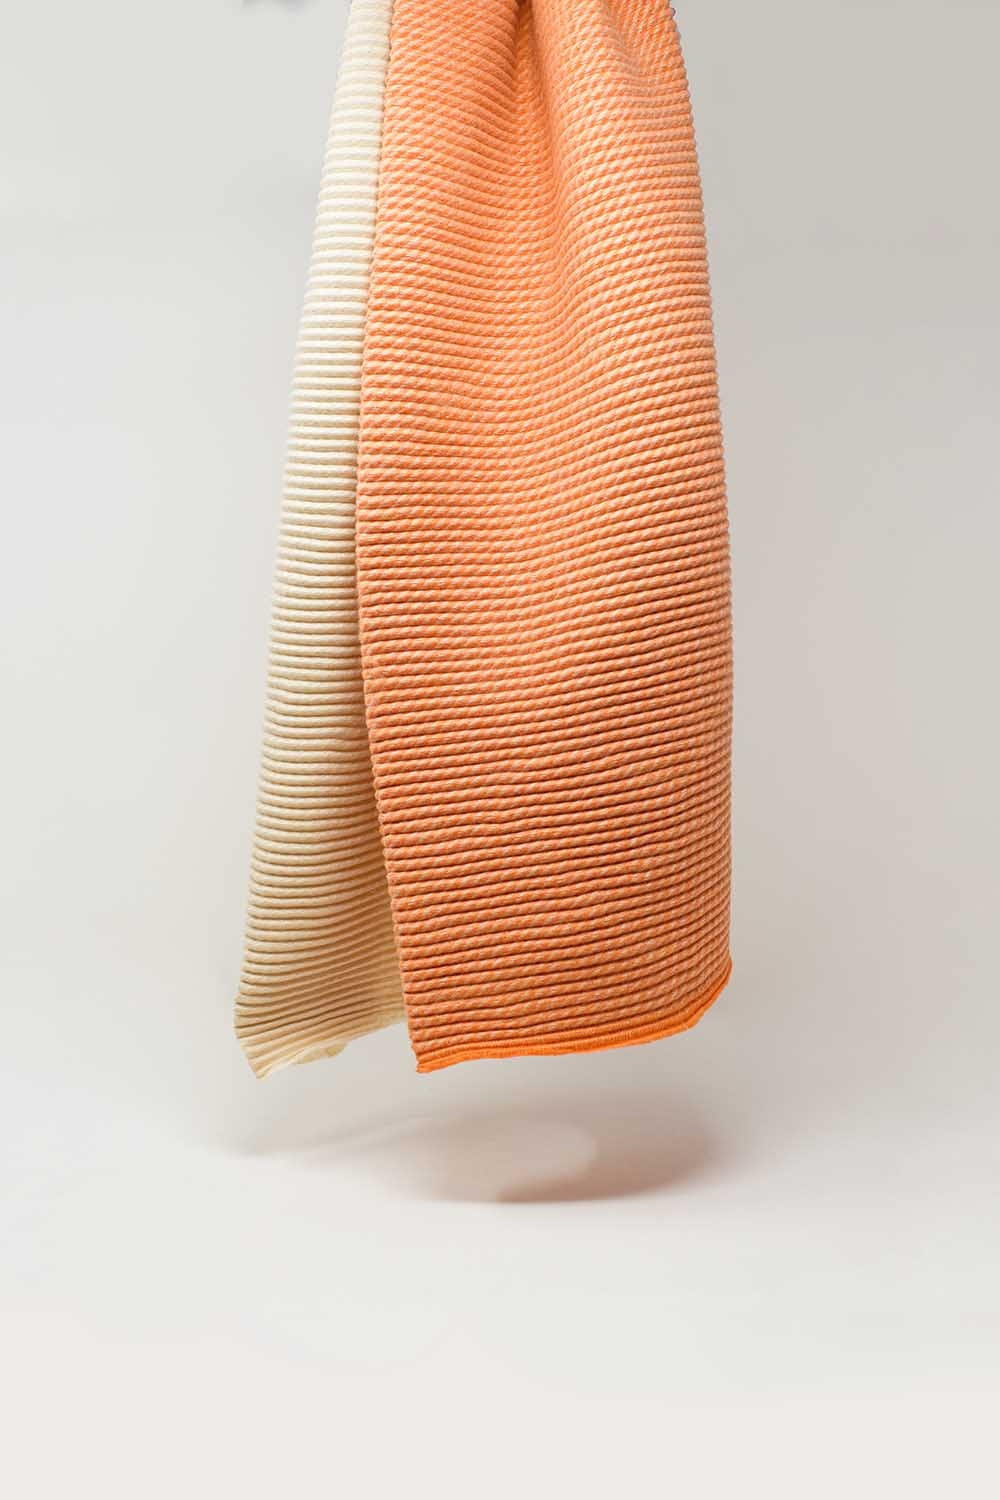 Sciarpa sottile con maglie miste nei toni dell'arancione